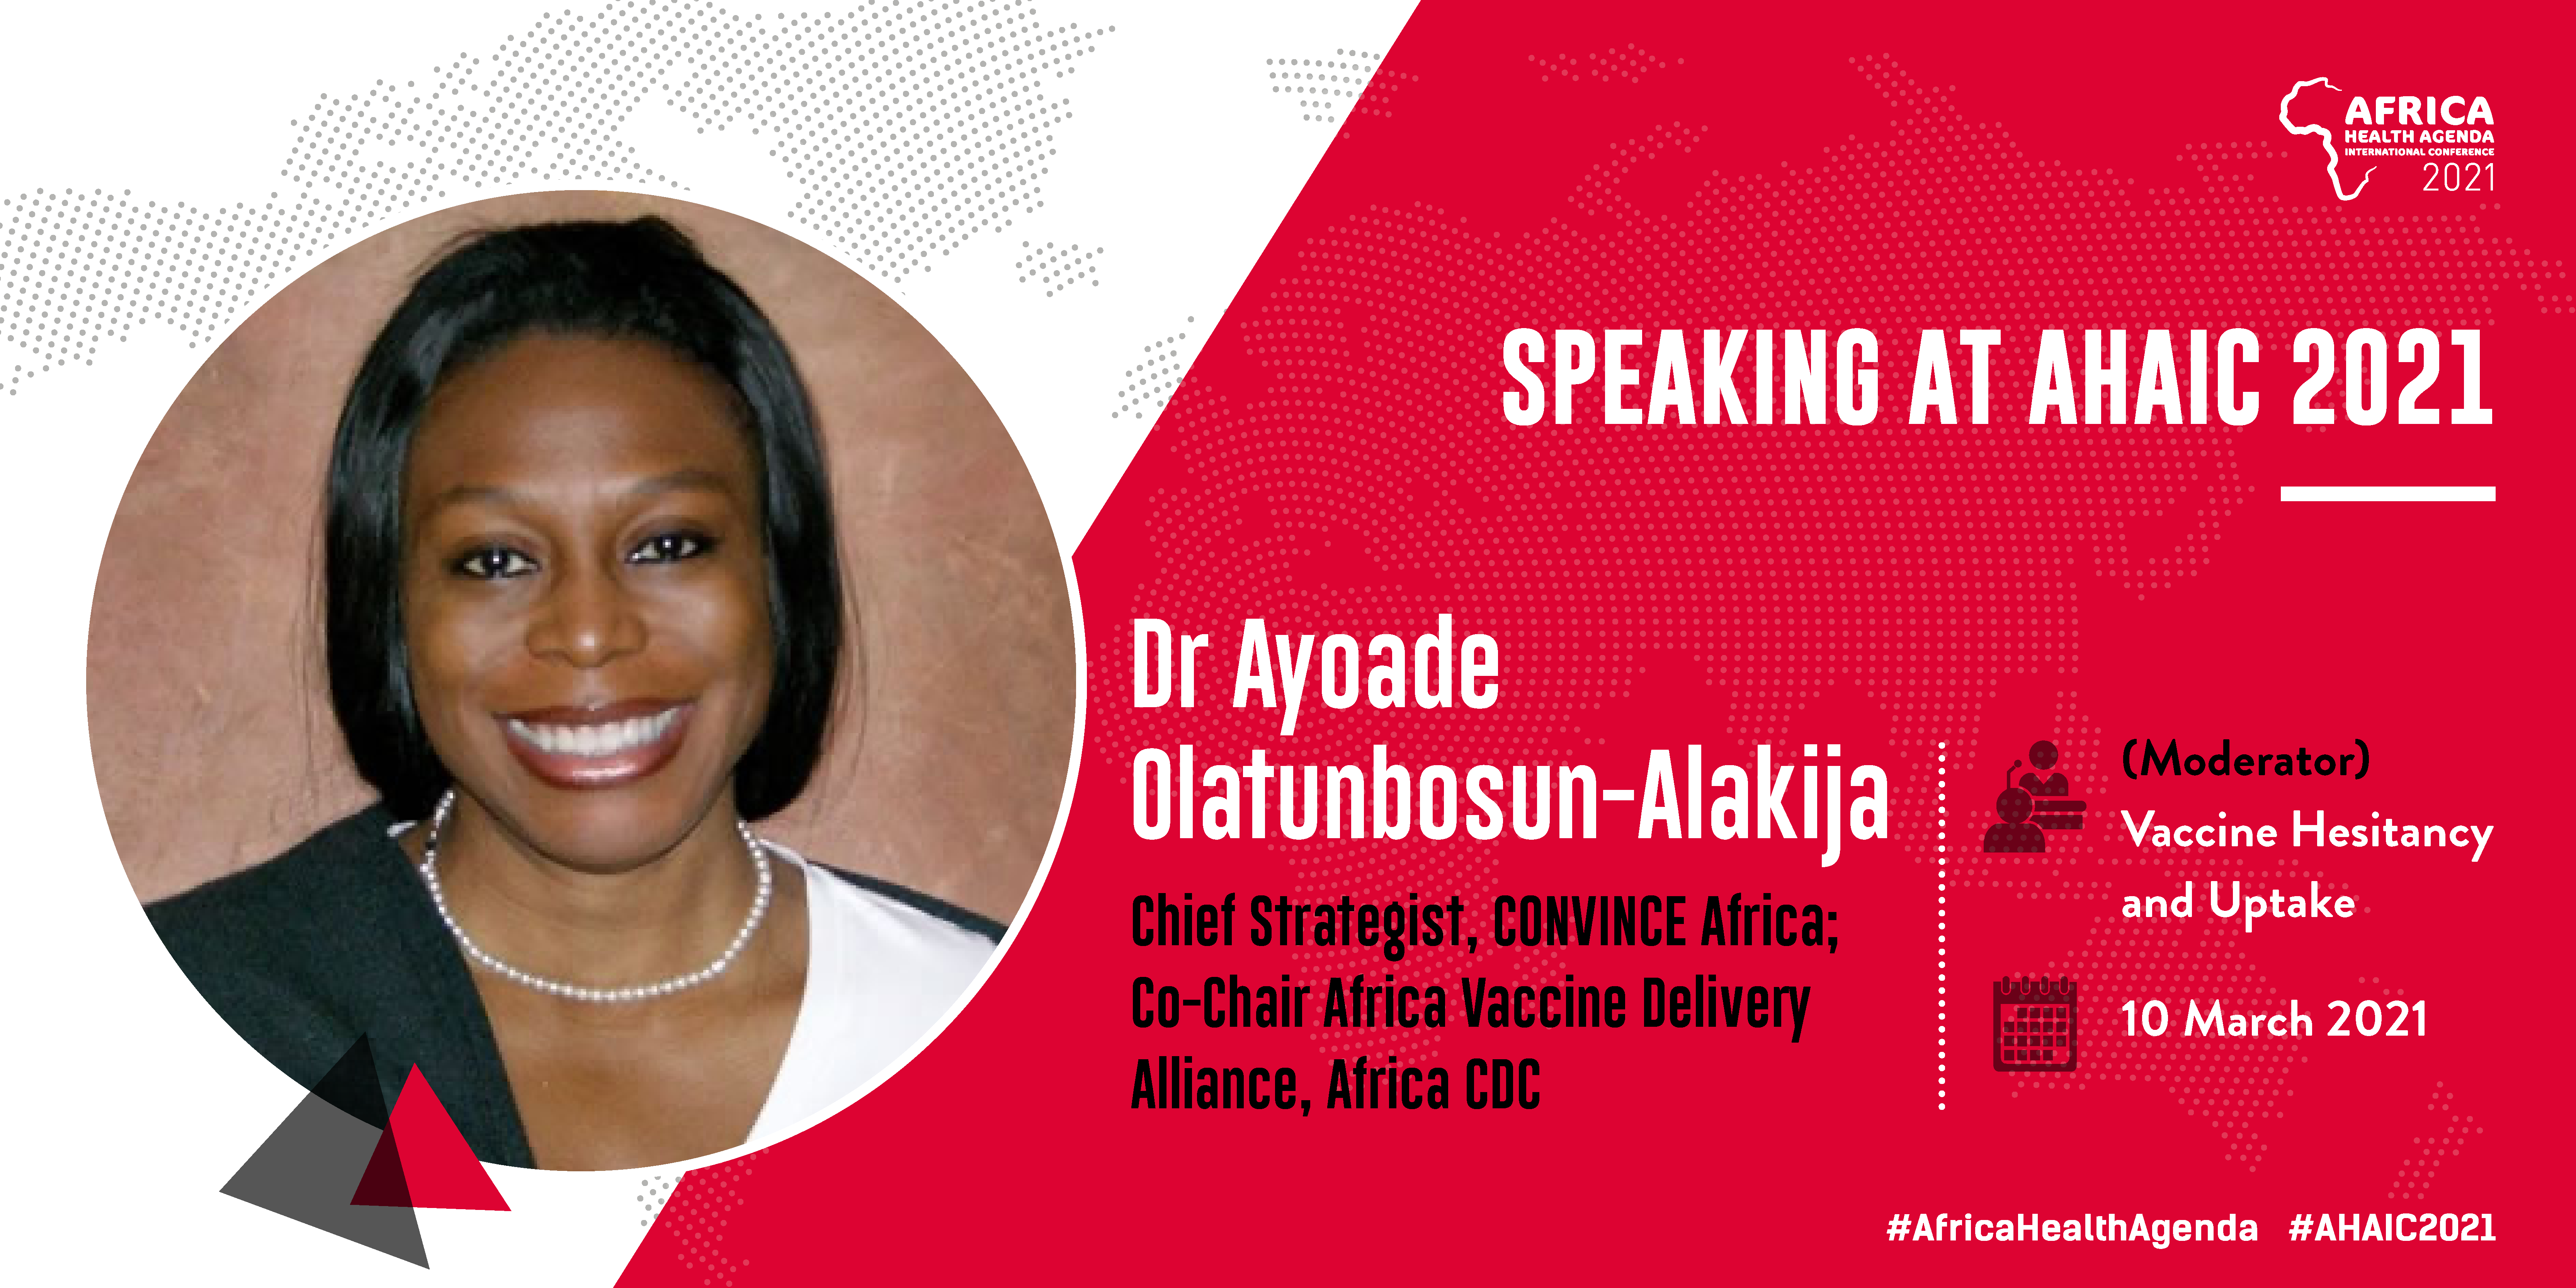 Dr Ayoade Olatunbosun-Alakija